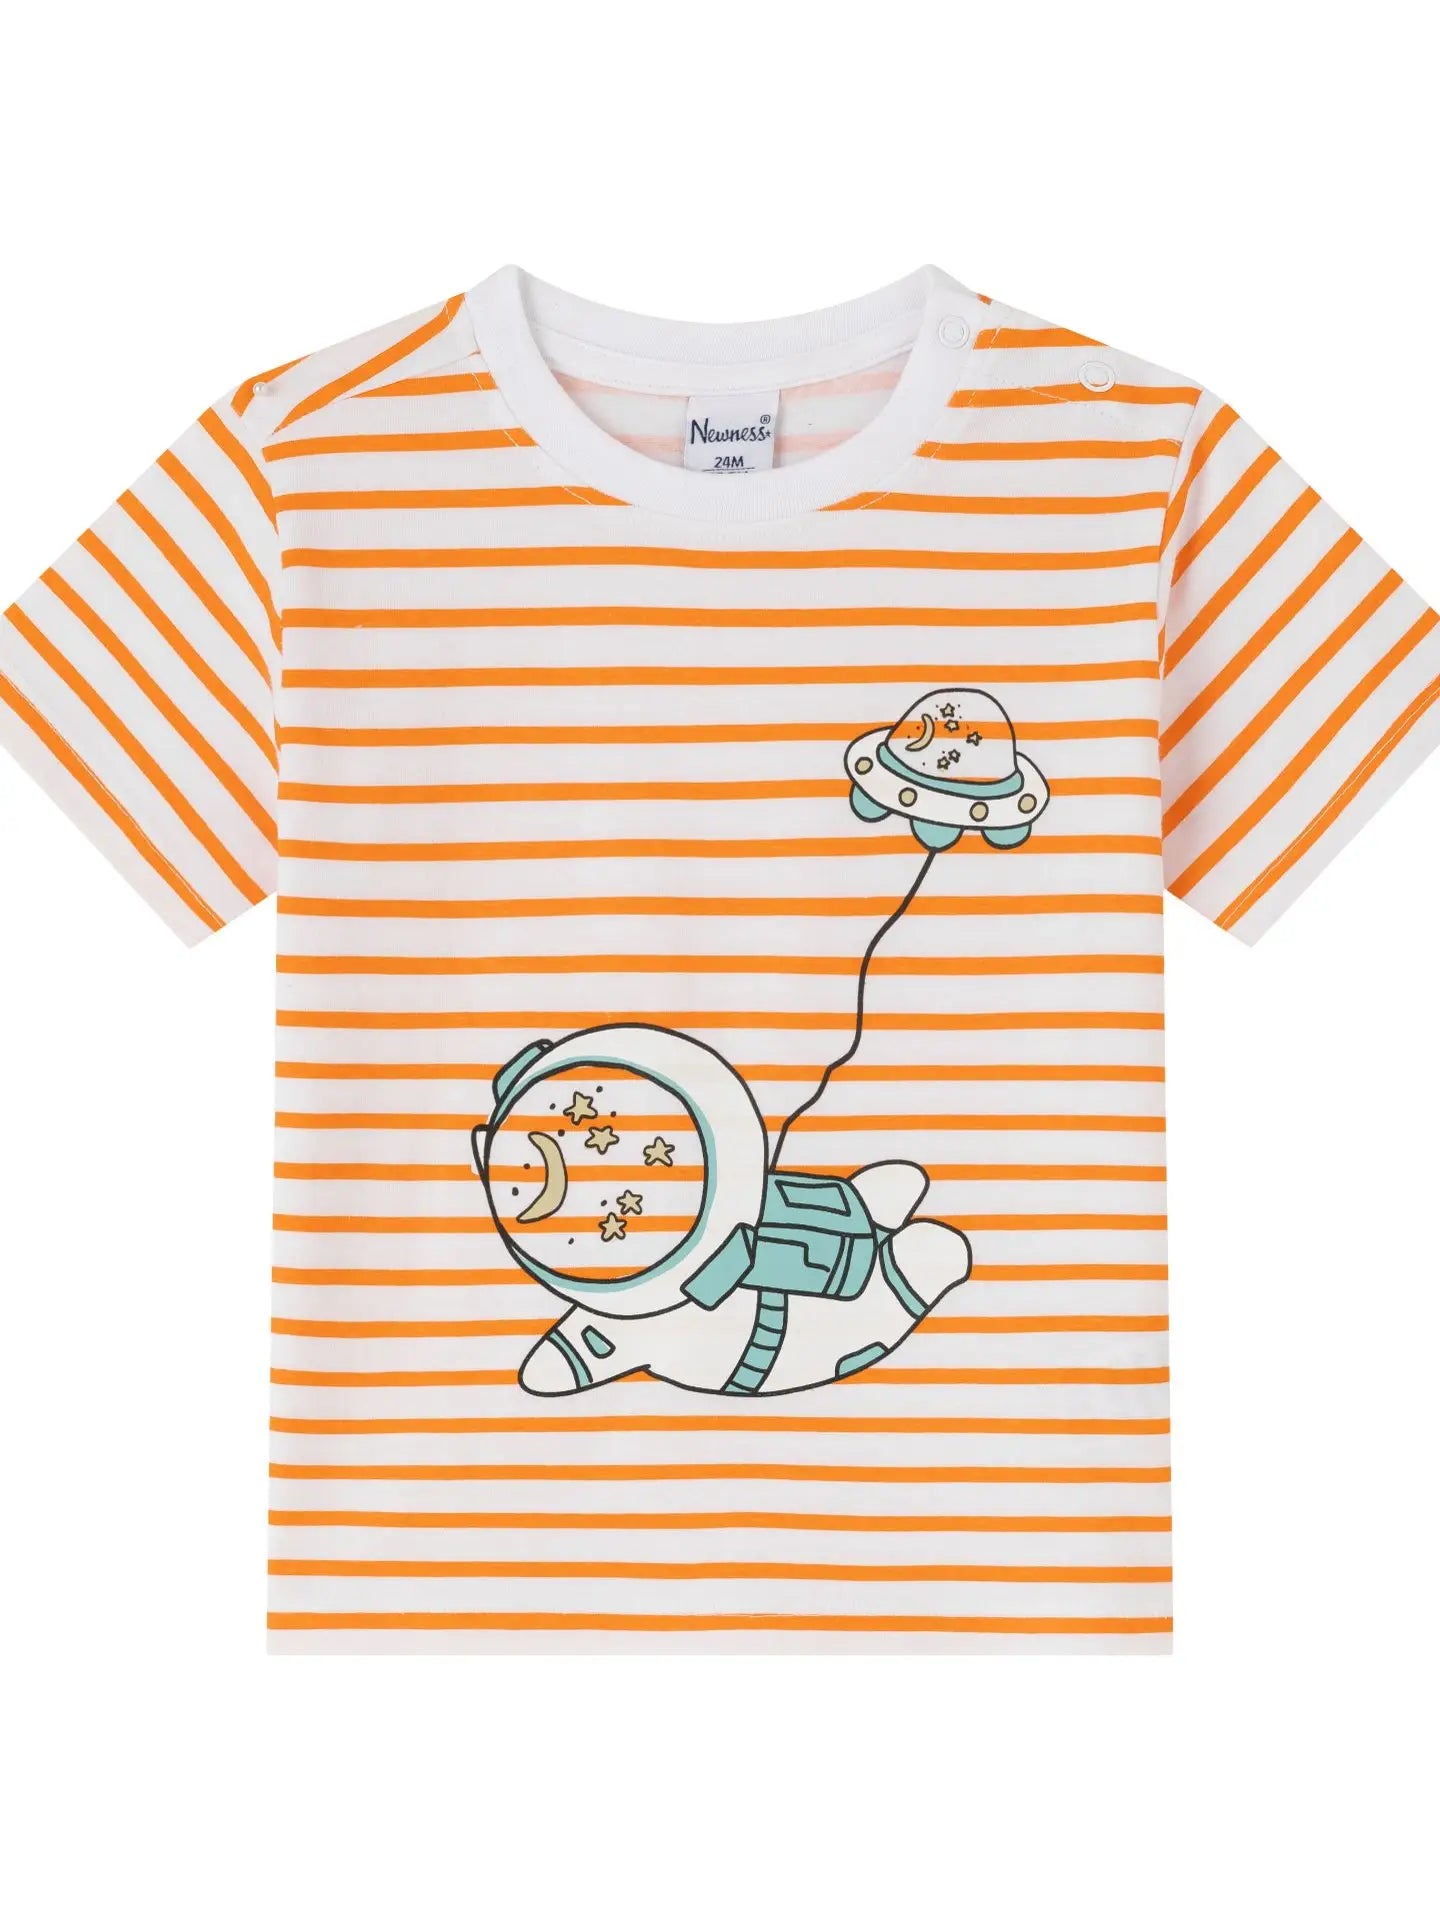 Kinder/Baby T-Shirt mit Astronauten Druck gestreift, orange